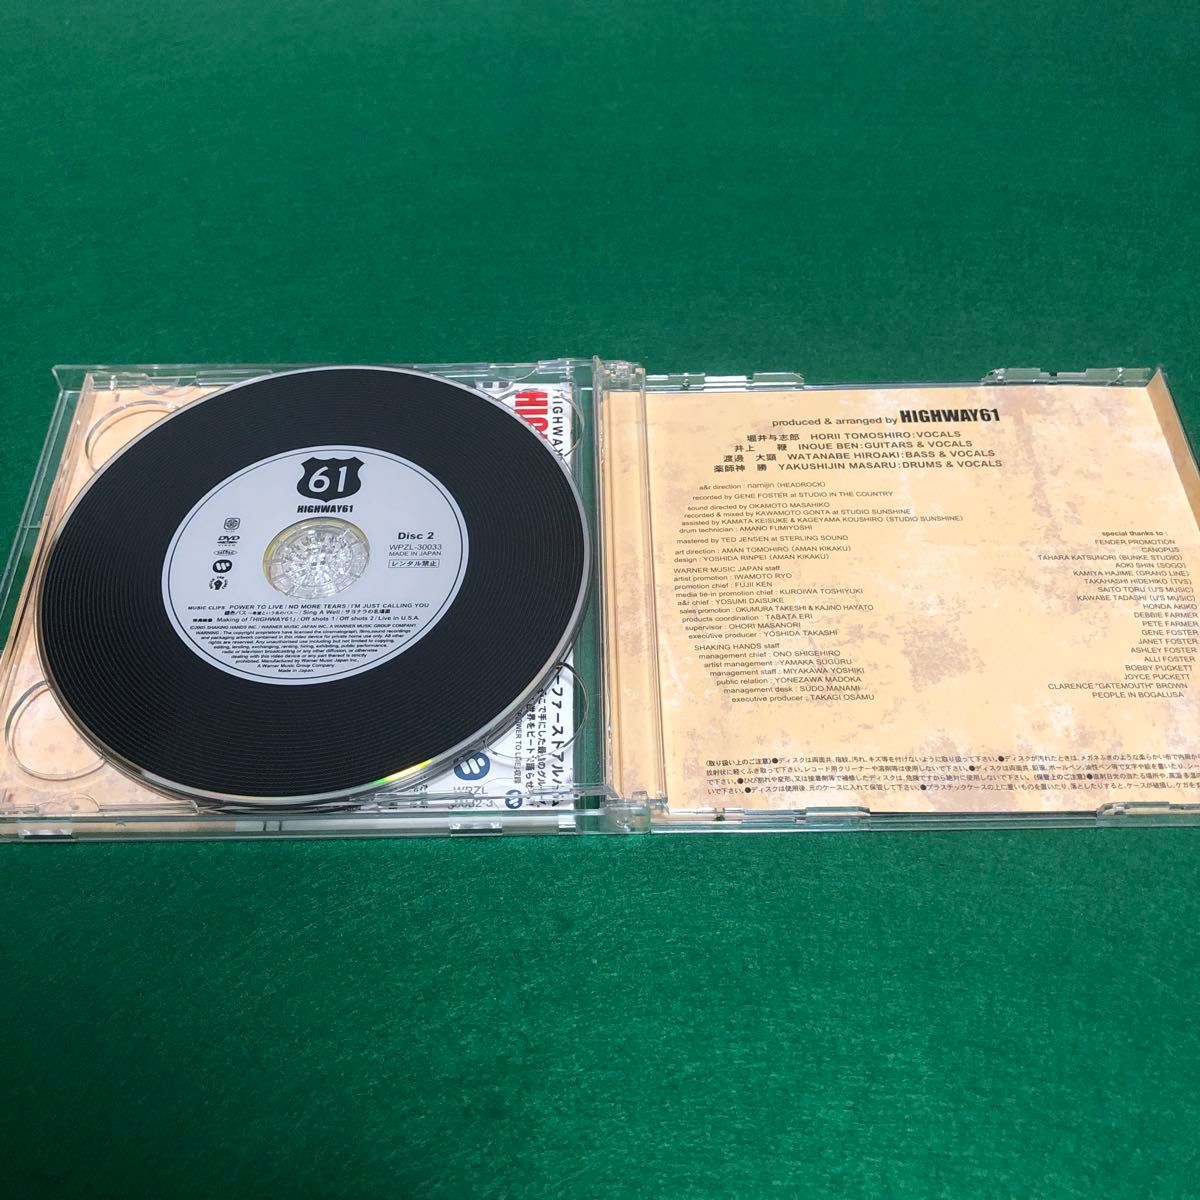 【CD+DVD】HIGHWAY61 / HIGHWAY 61 (初回限定盤)